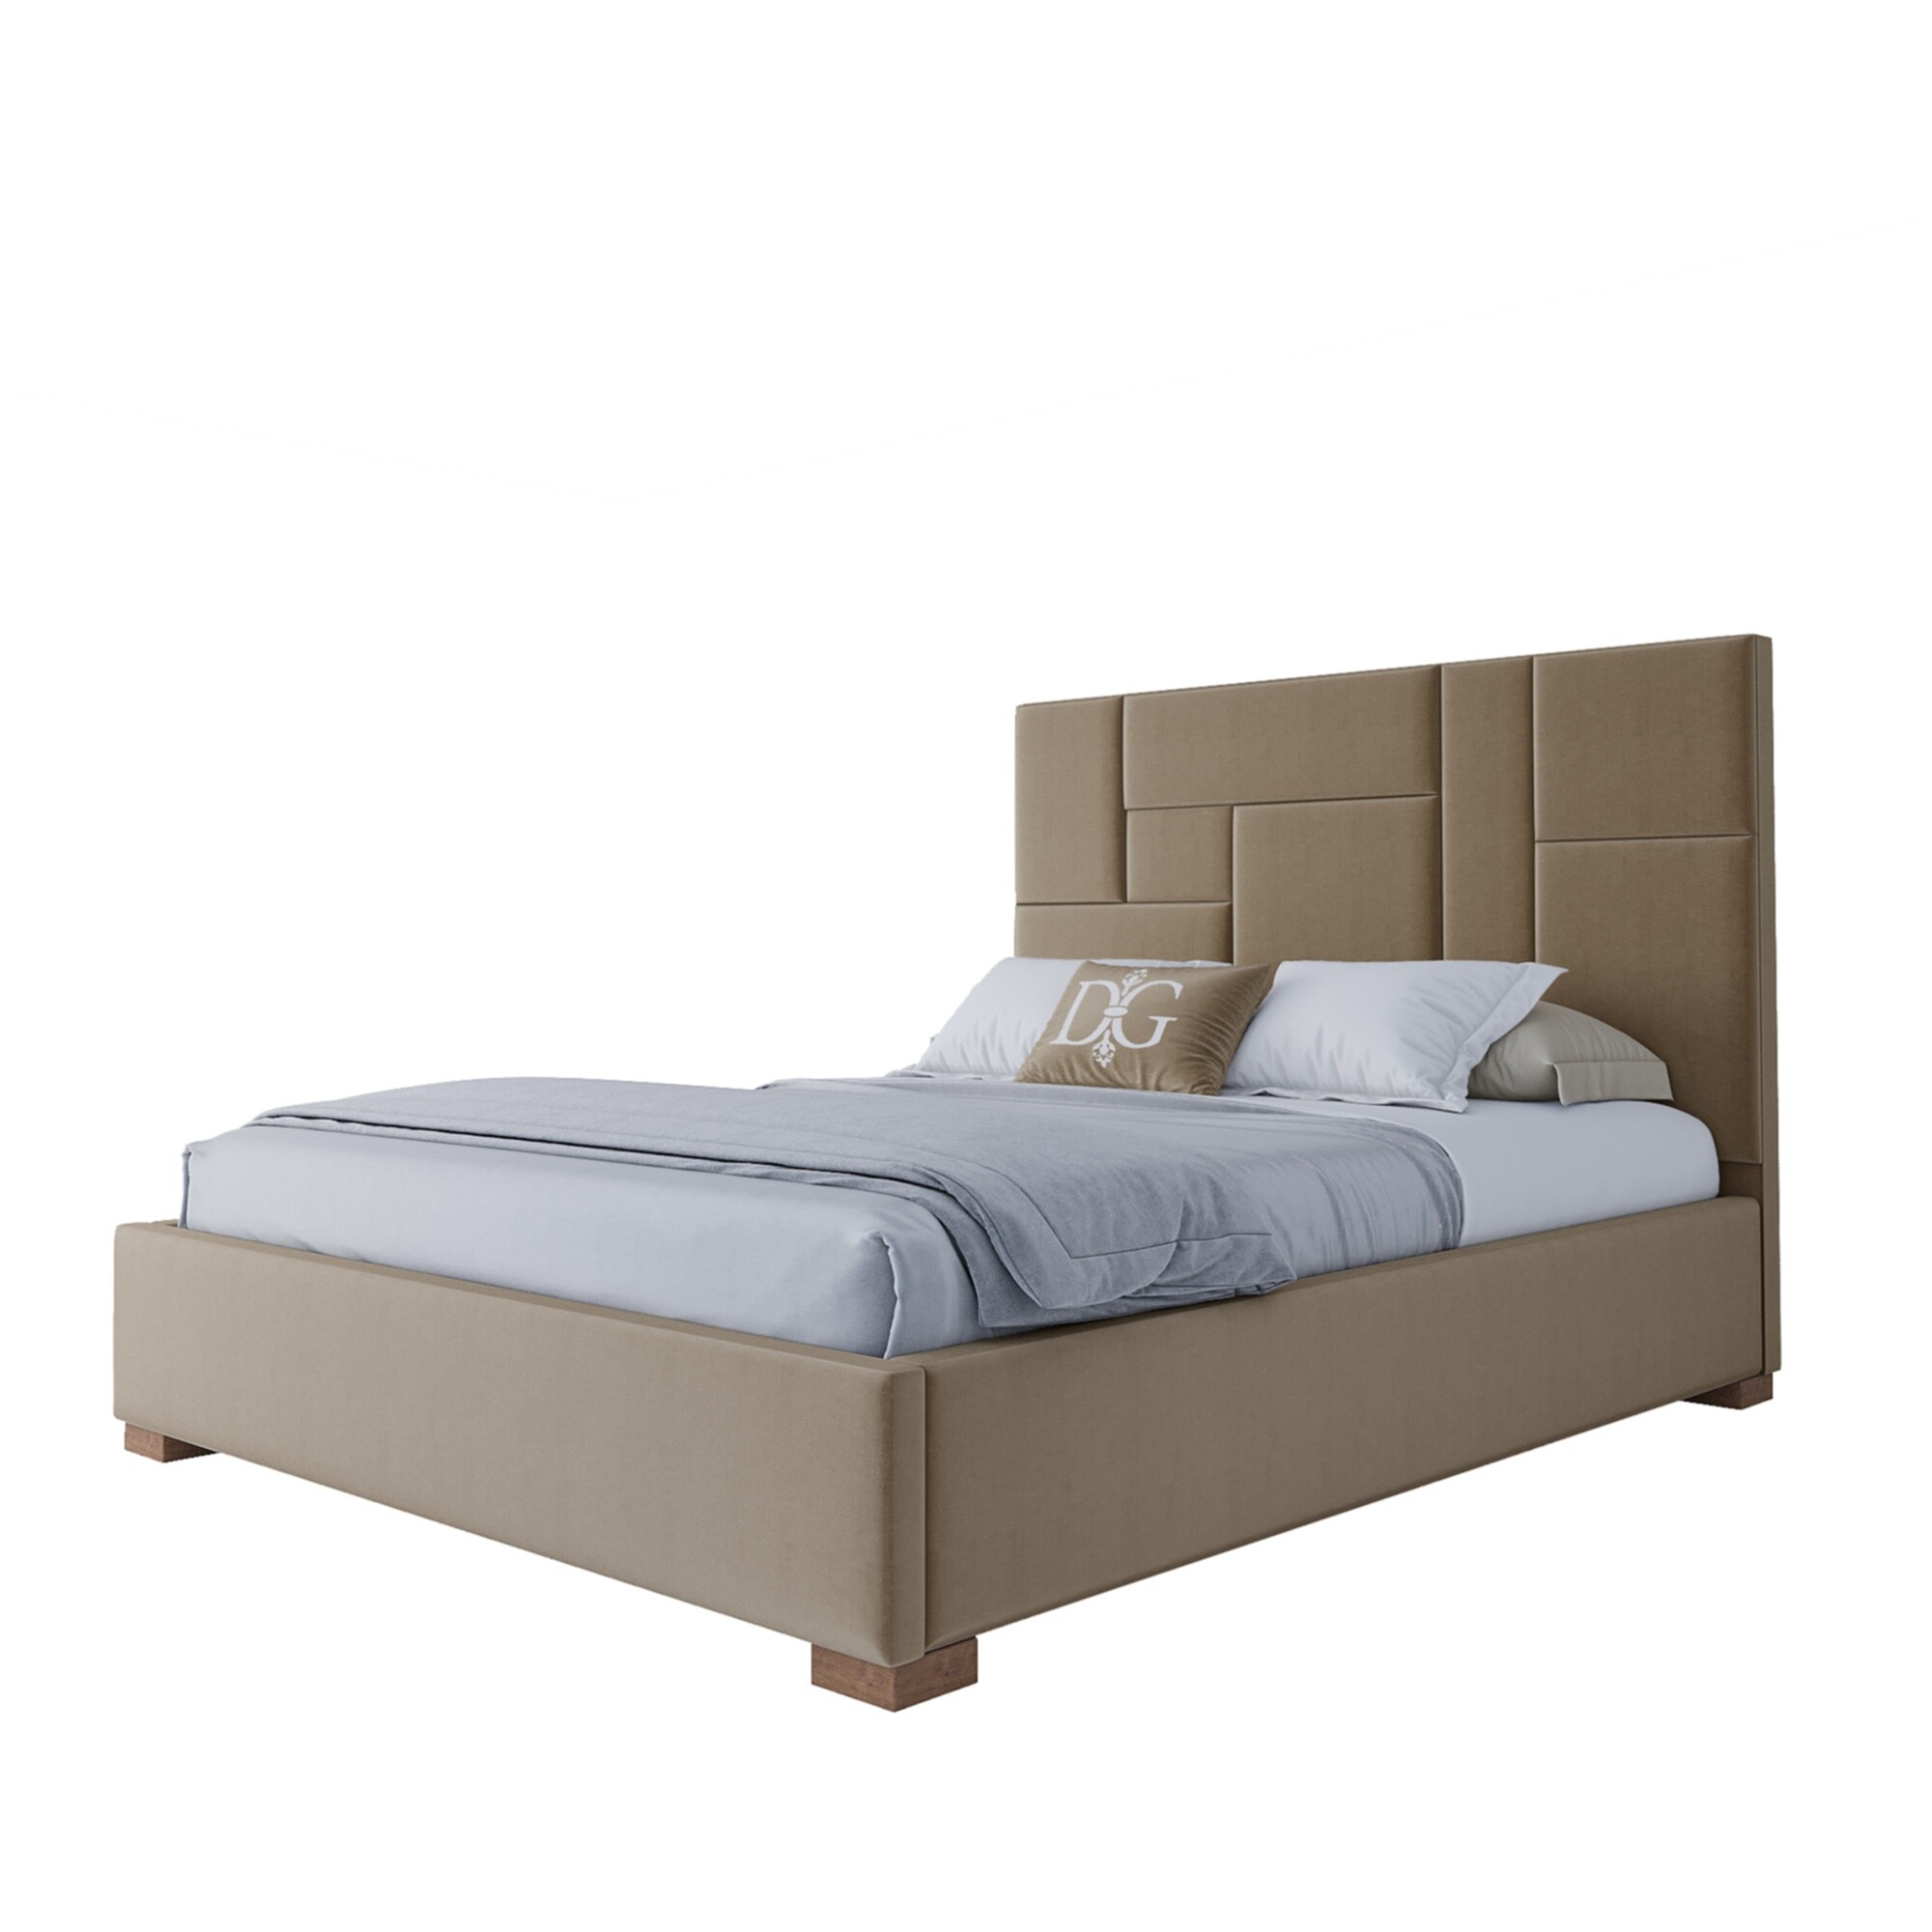 Кровать двуспальная с мягким изголовьем 160х200 см бежевая Wax